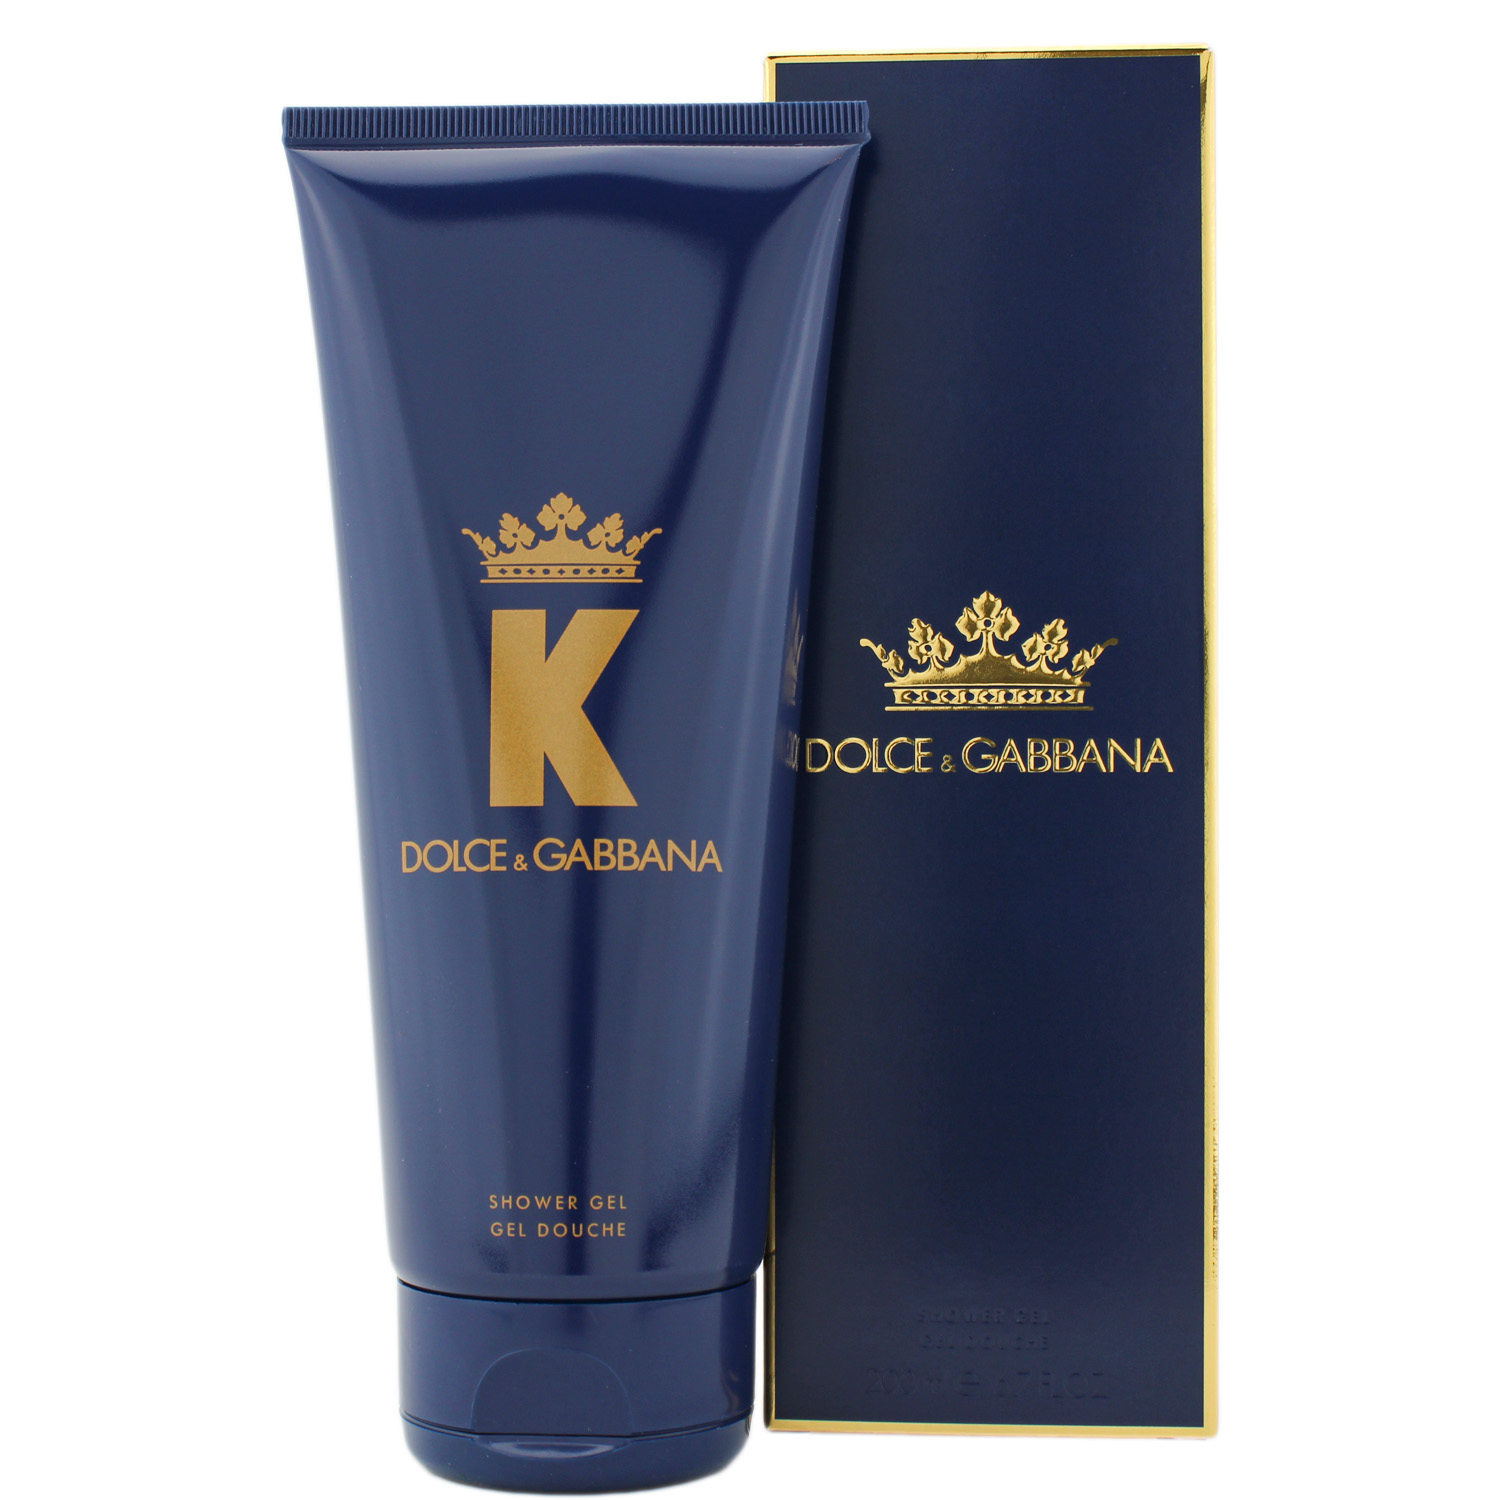 Dolce & Gabbana K by Dolce & Gabbana Shower Gel 200ml